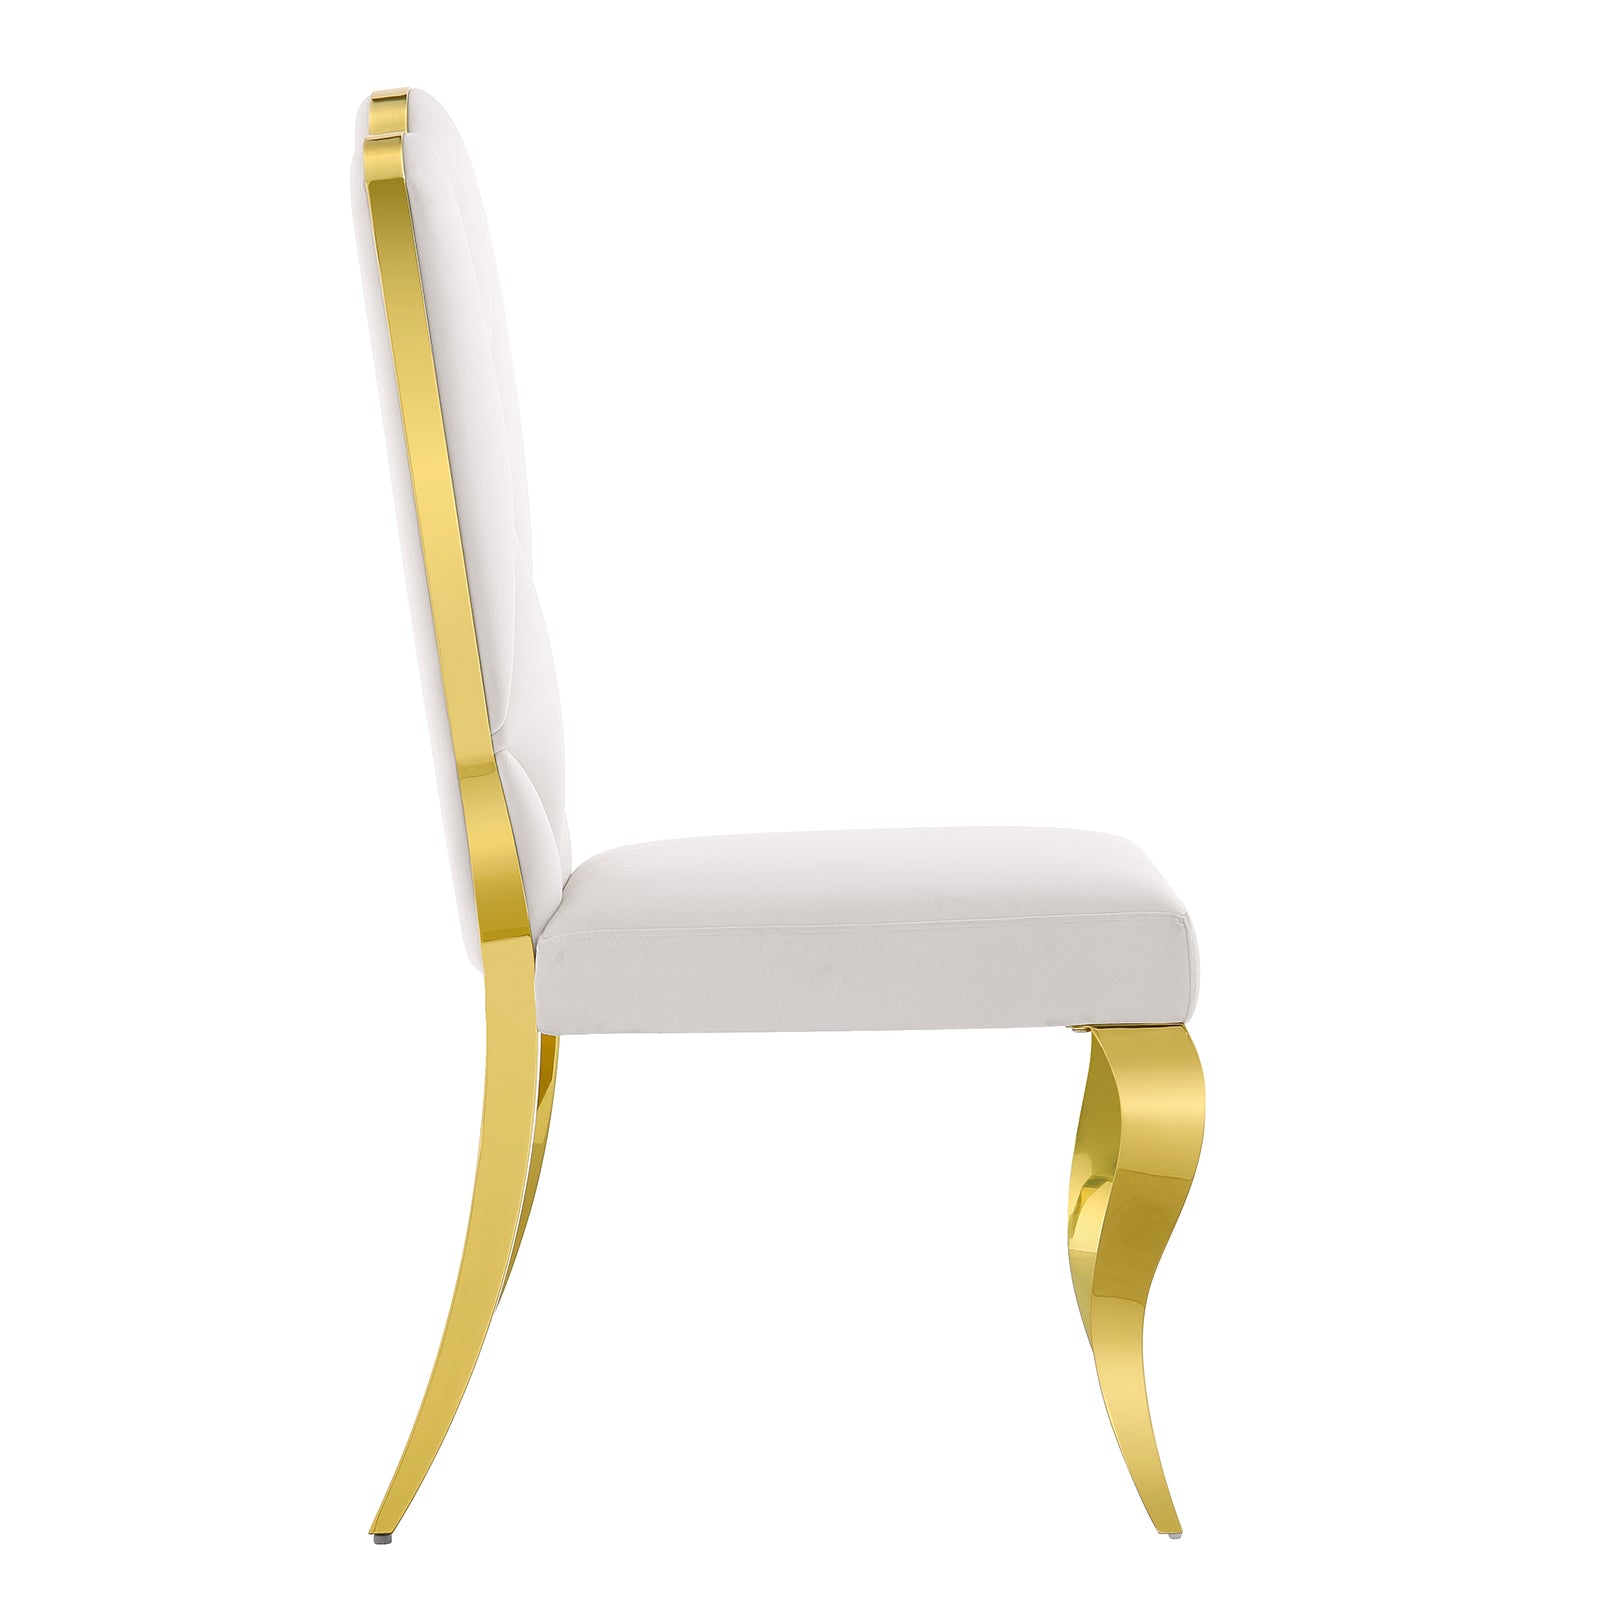 White velvet dining chairs | Cloud backrest design | Gold Metal legs | C142